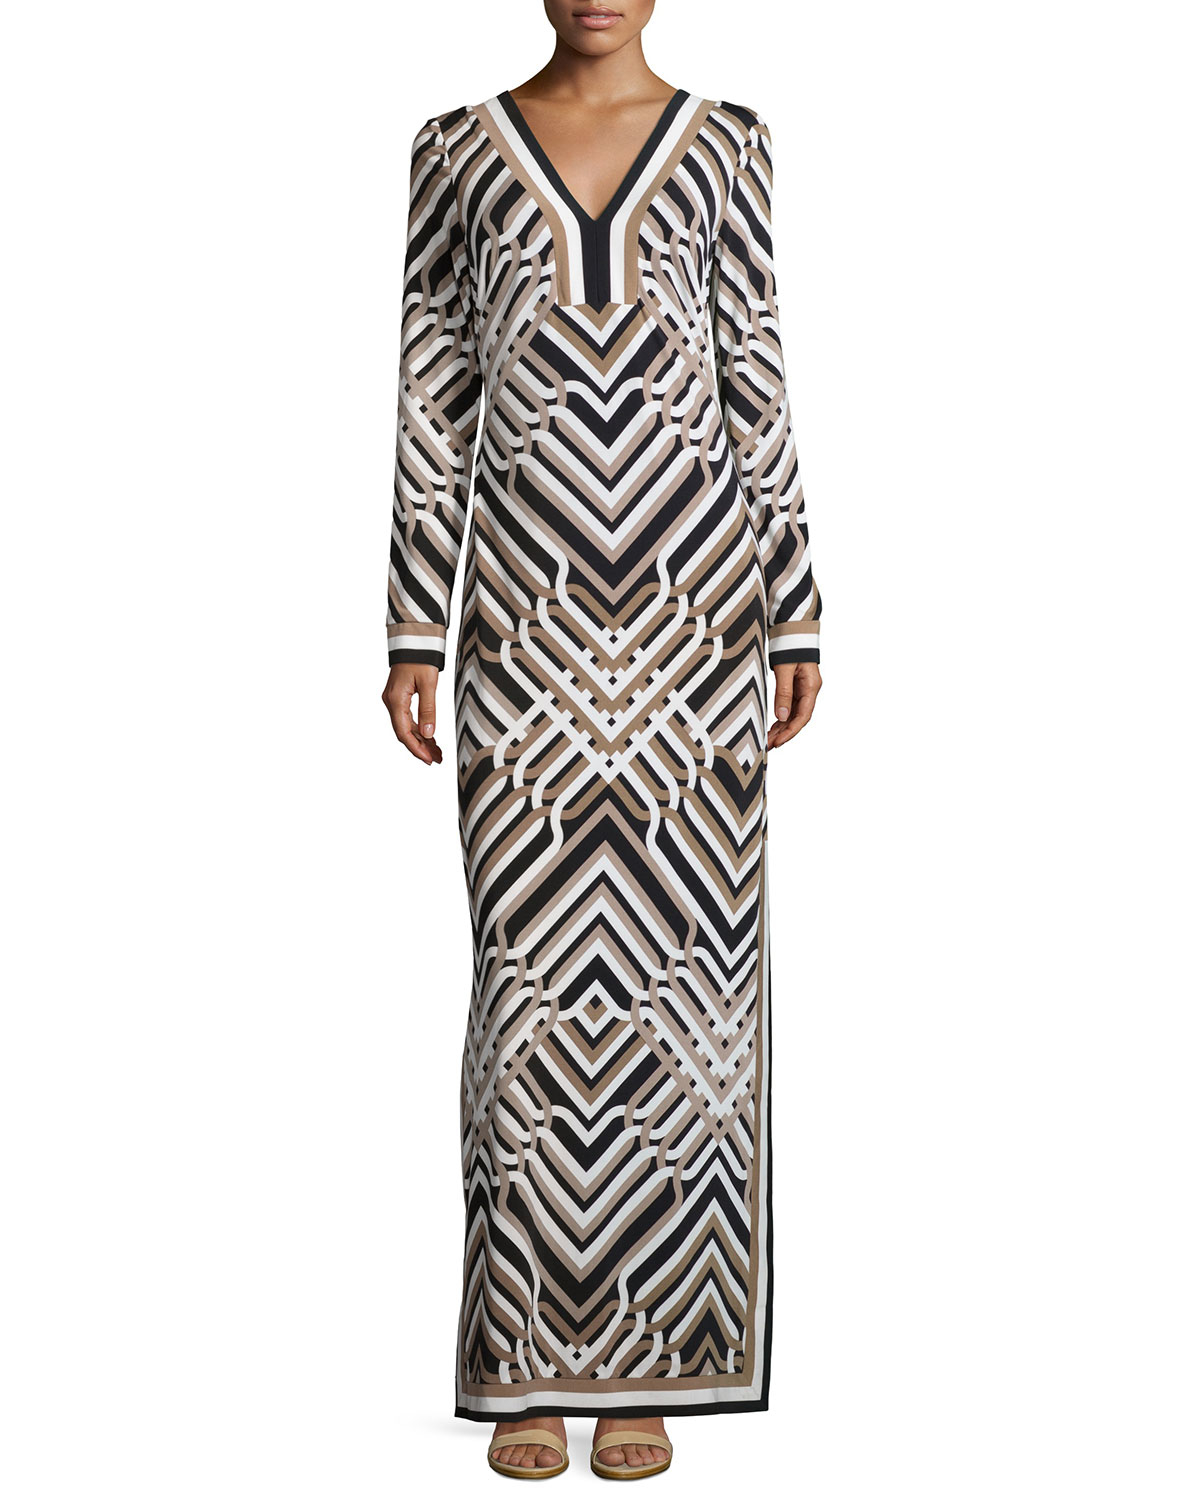 Lyst - Trina Turk Long-sleeve Geometric-print Maxi Dress in Black